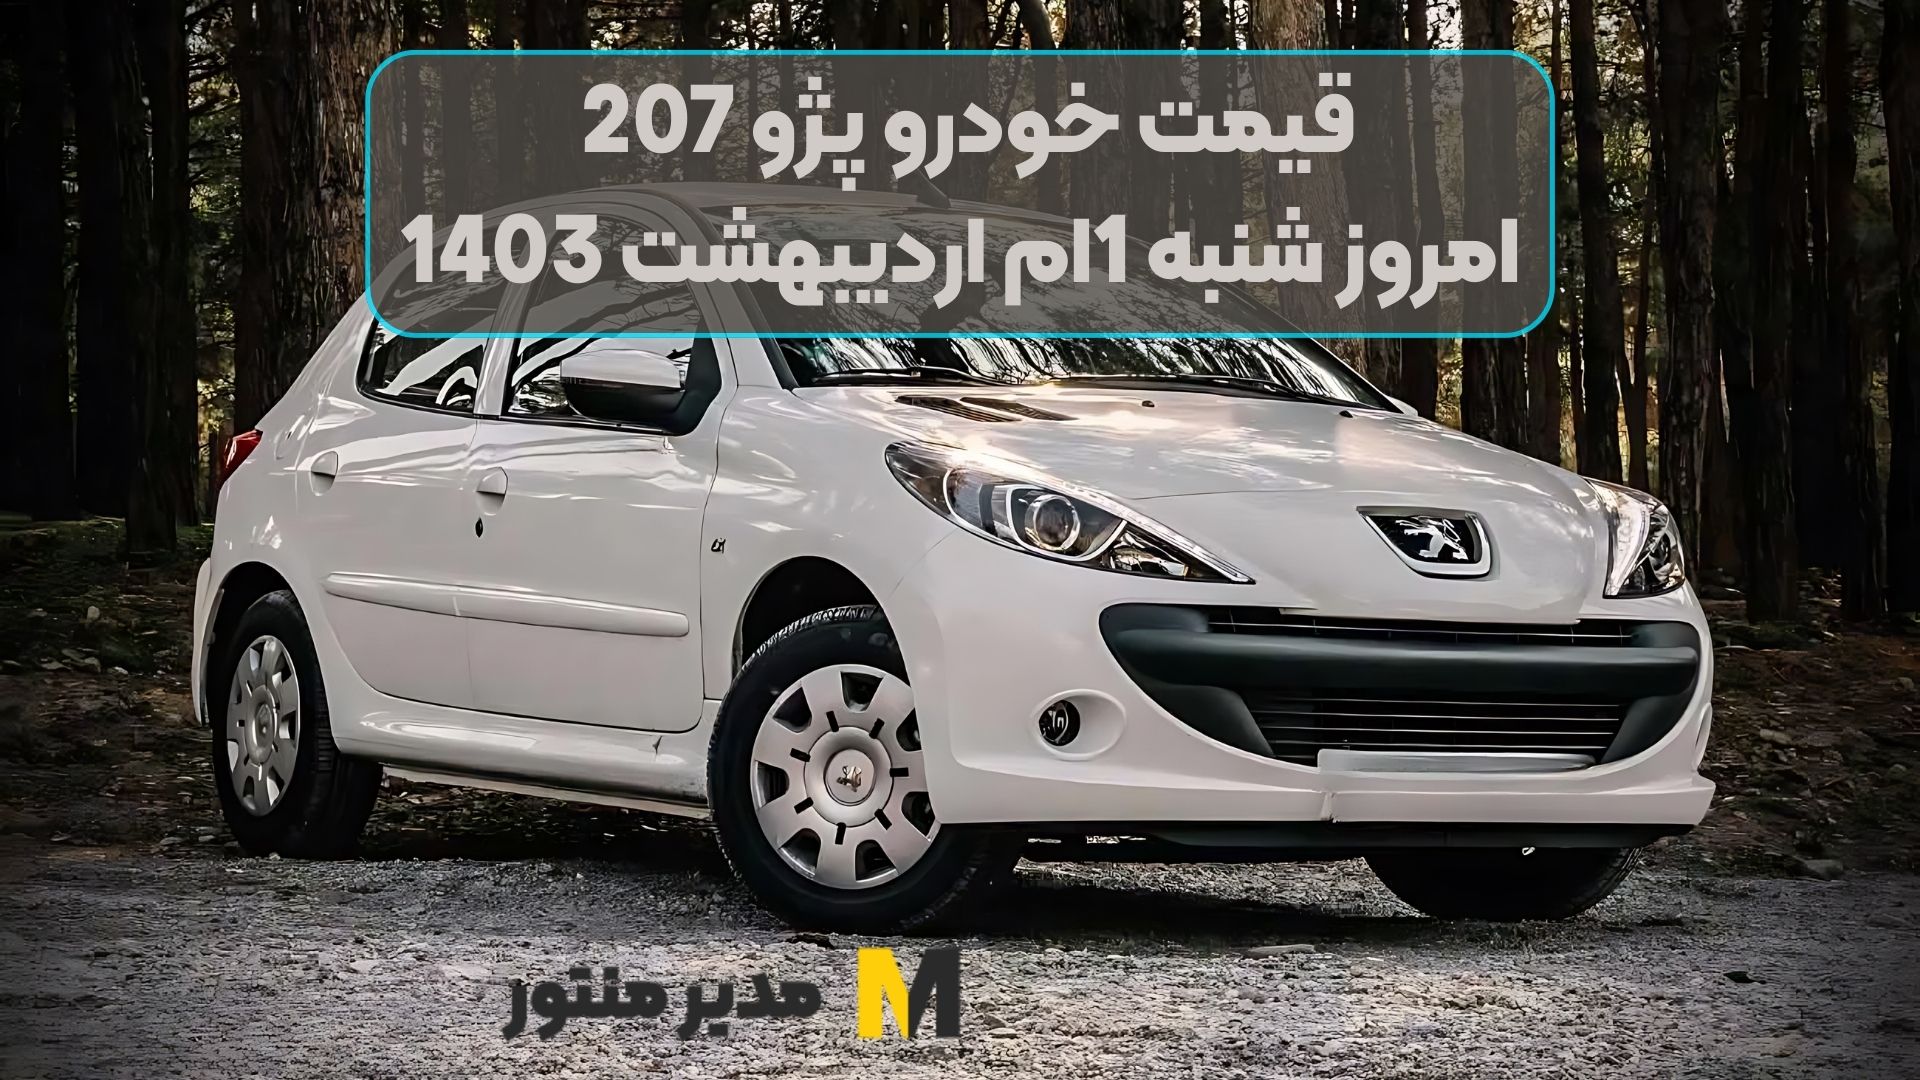 قیمت خودرو پژو 207 امروز شنبه 1ام اردیبهشت 1403